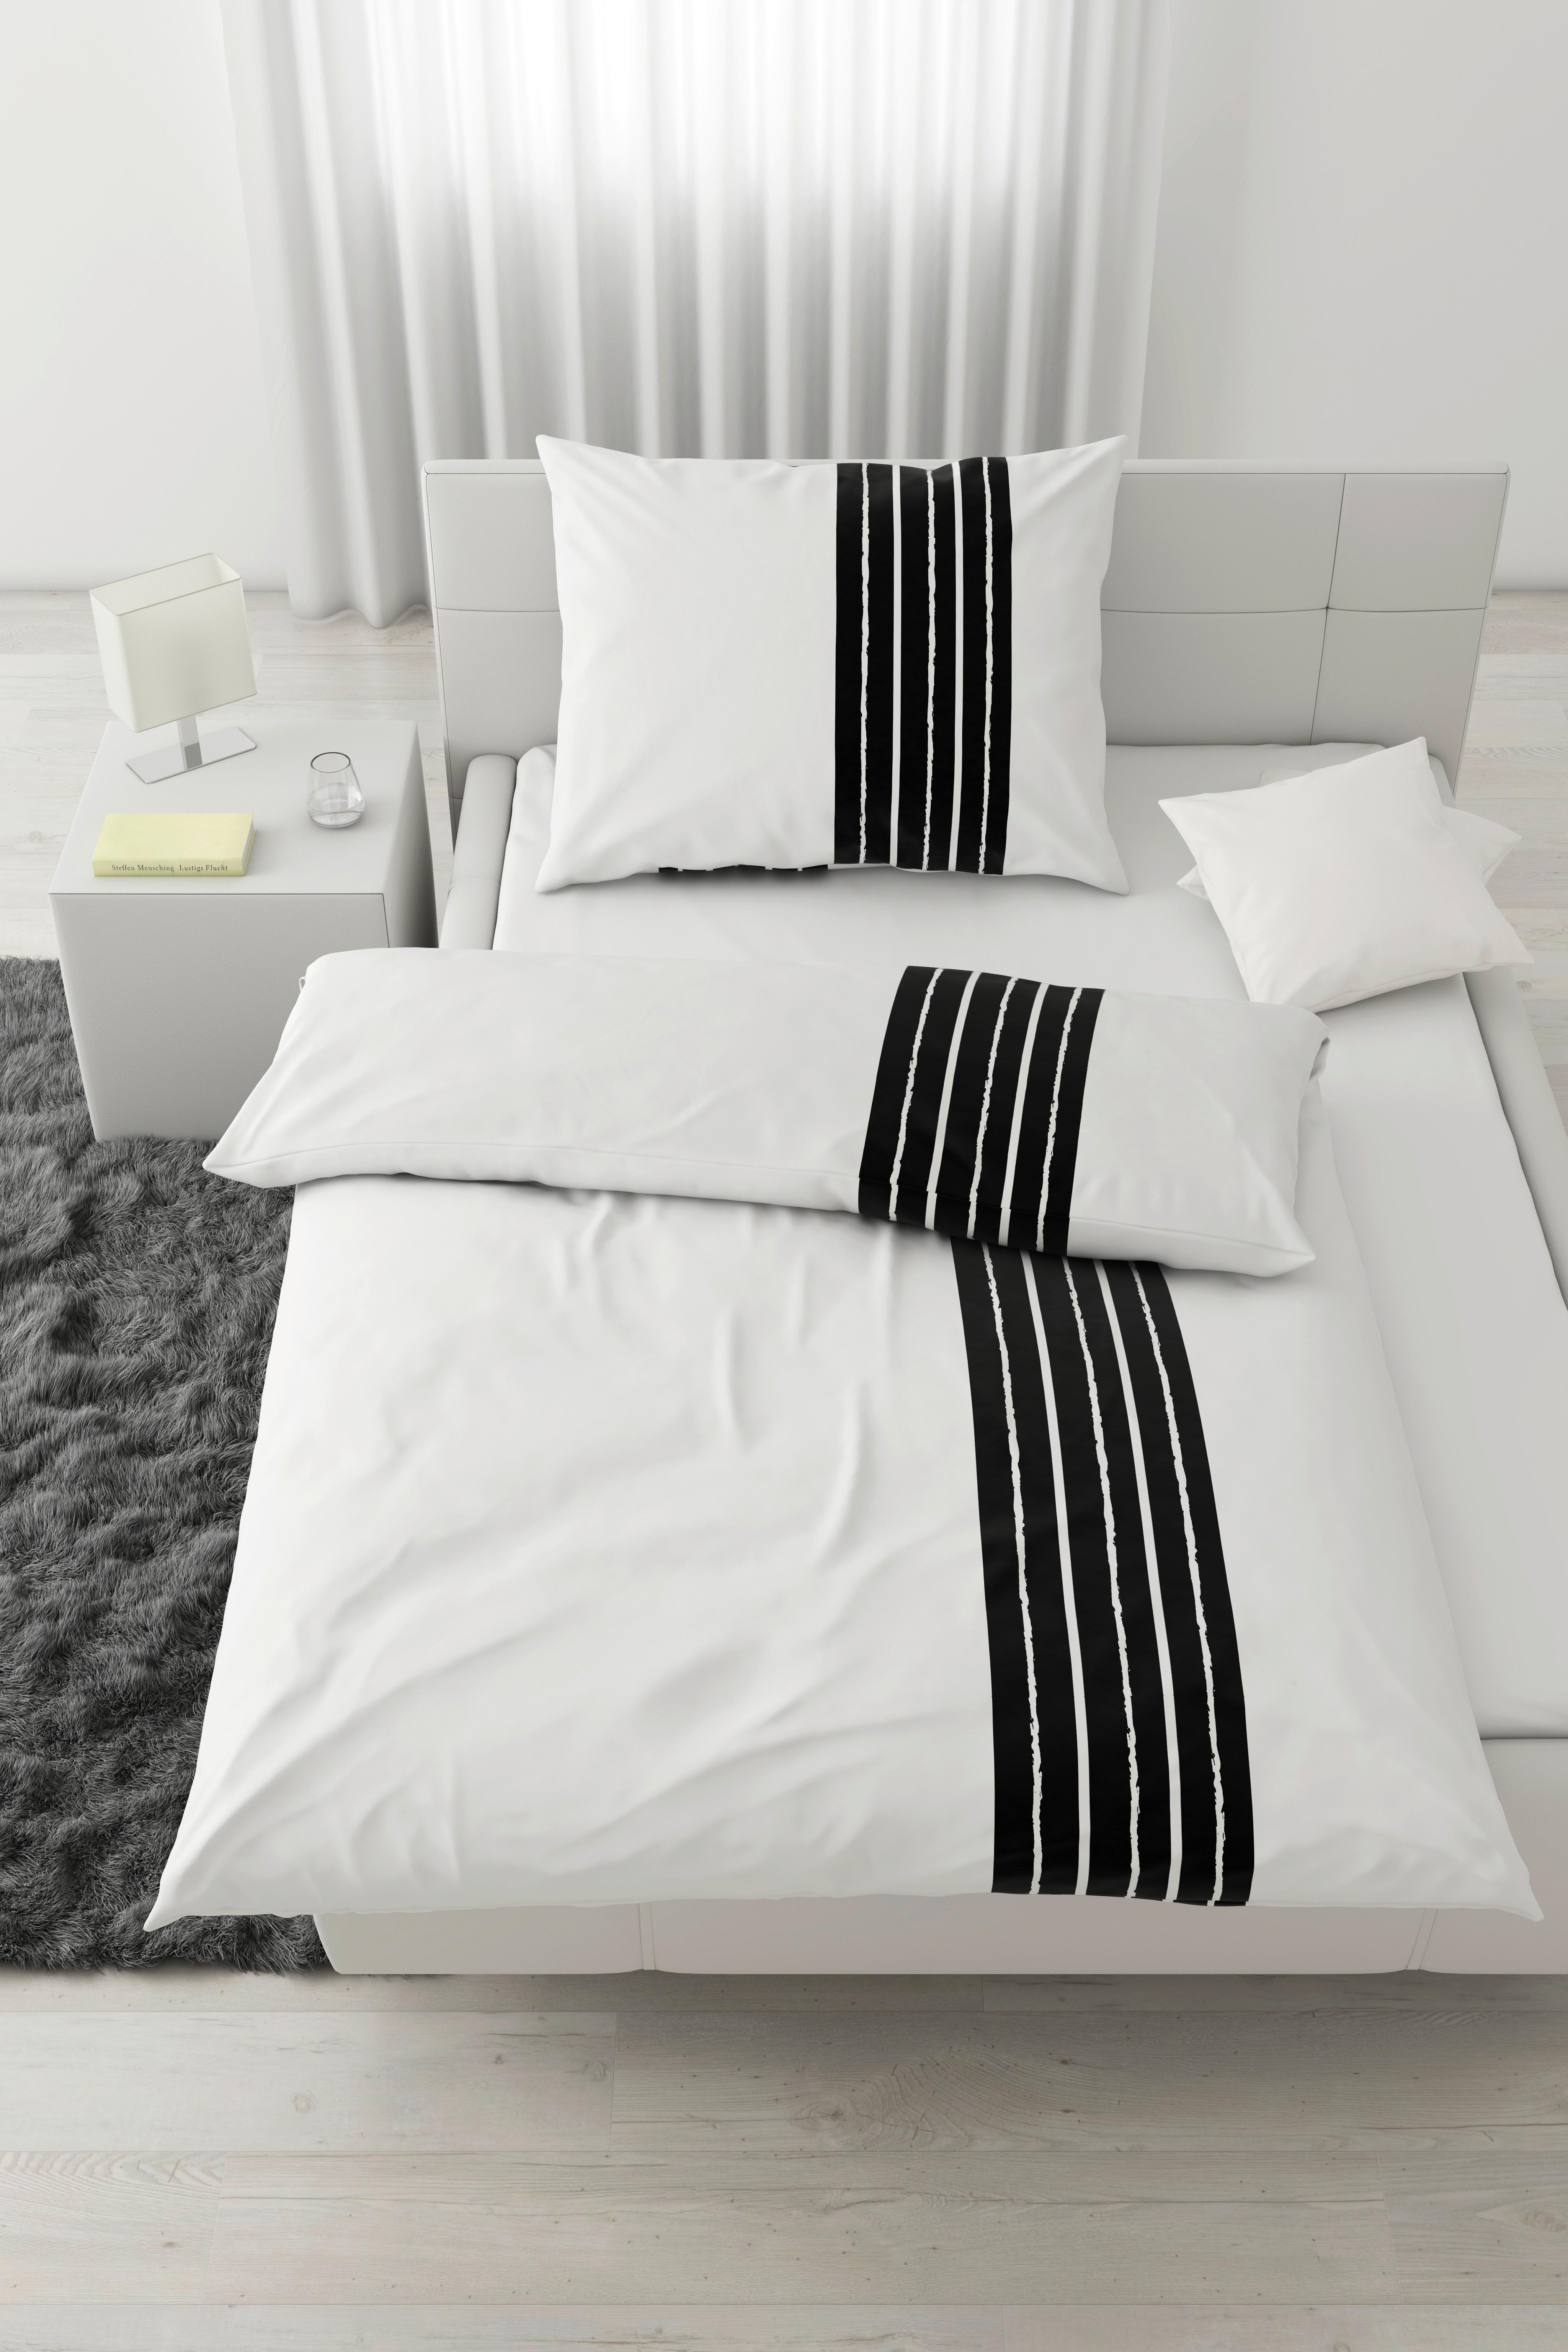 Bettwäsche Stripes in Weiß ca. 140x200cm - Weiß, MODERN, Textil (140/200cm) - Modern Living